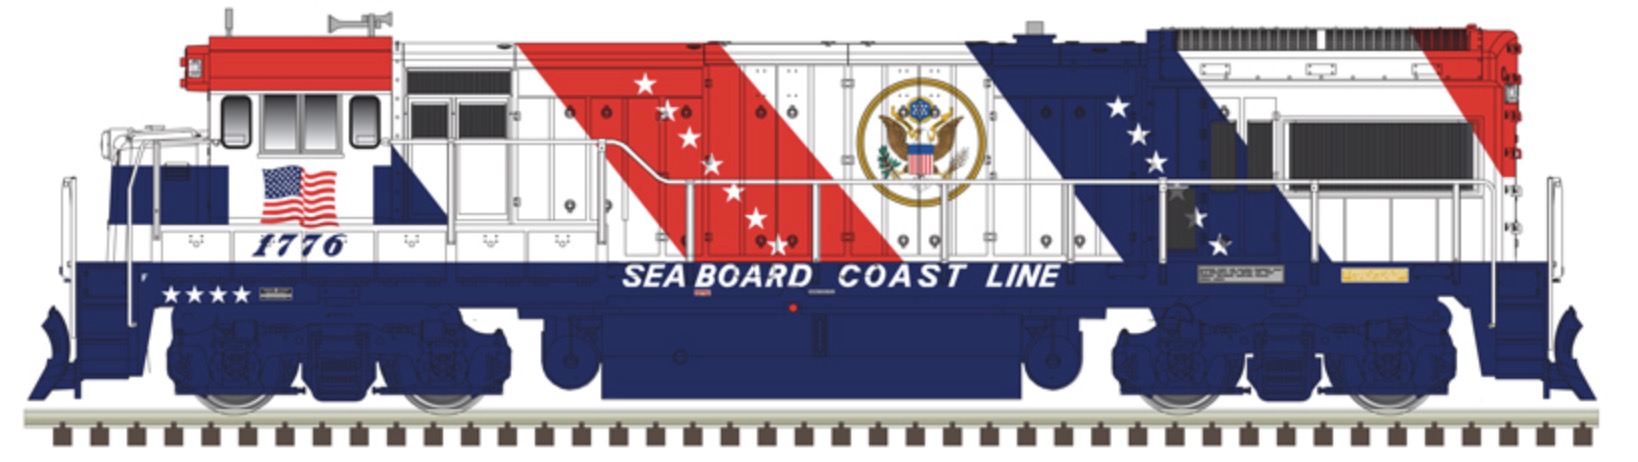 N Scale - Atlas - 40 005 954 - Locomotive, Diesel, GE U33/36B - Seaboard Coast Line - 1776